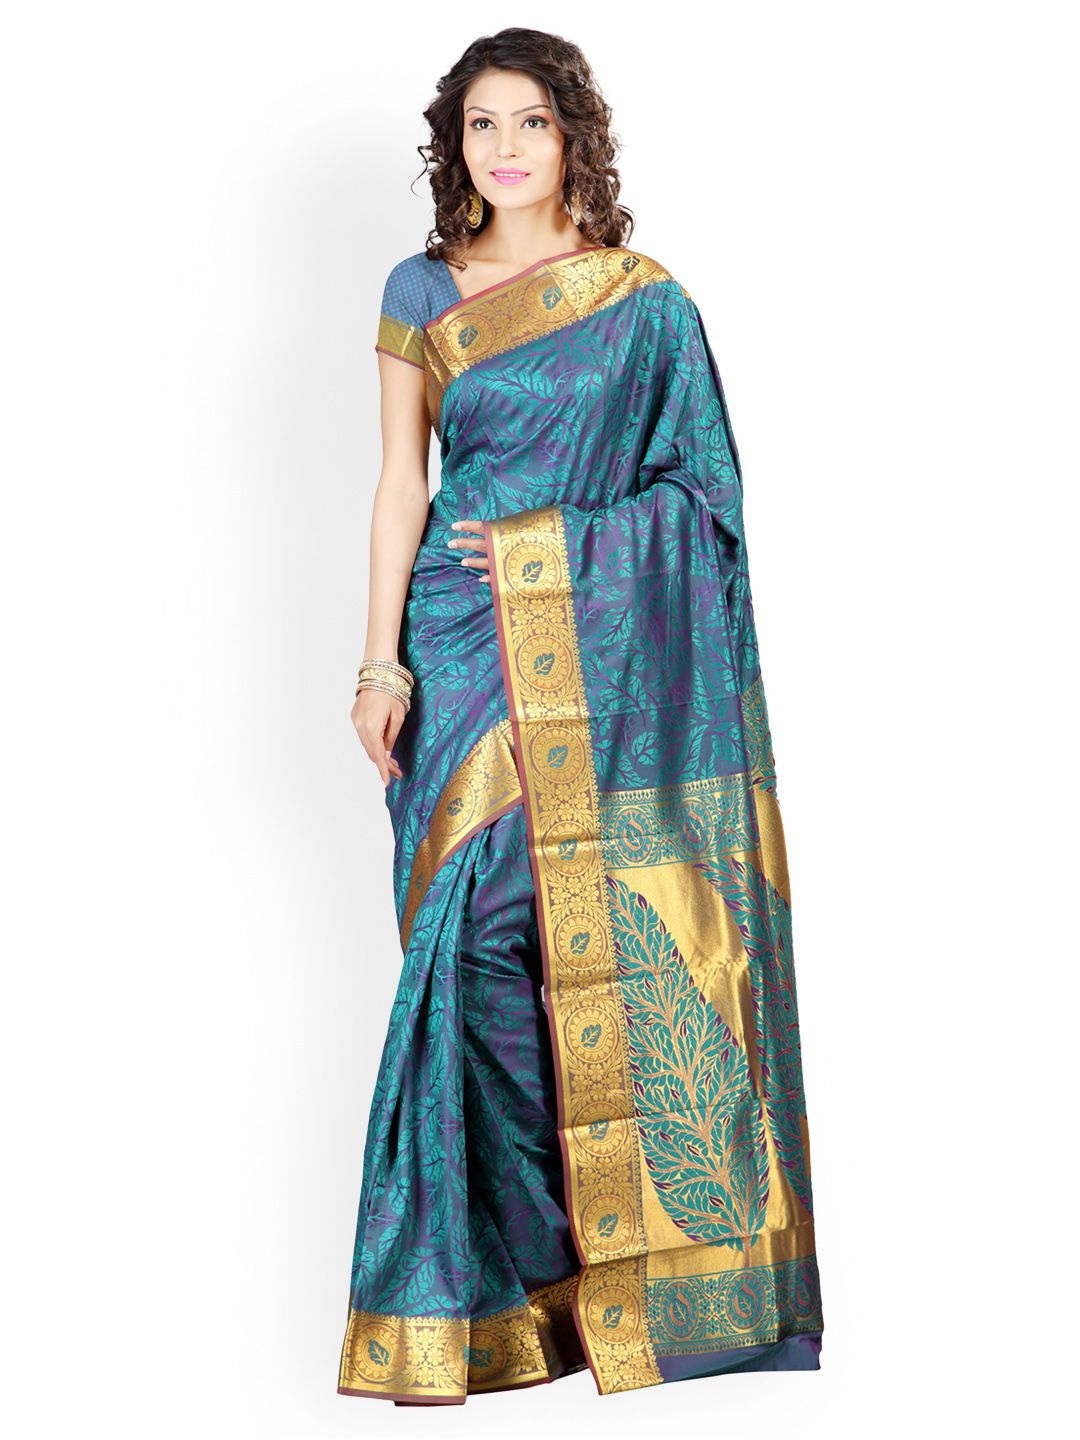 Varkala Silk Sarees Teal Green Jacquard Saree Price in India